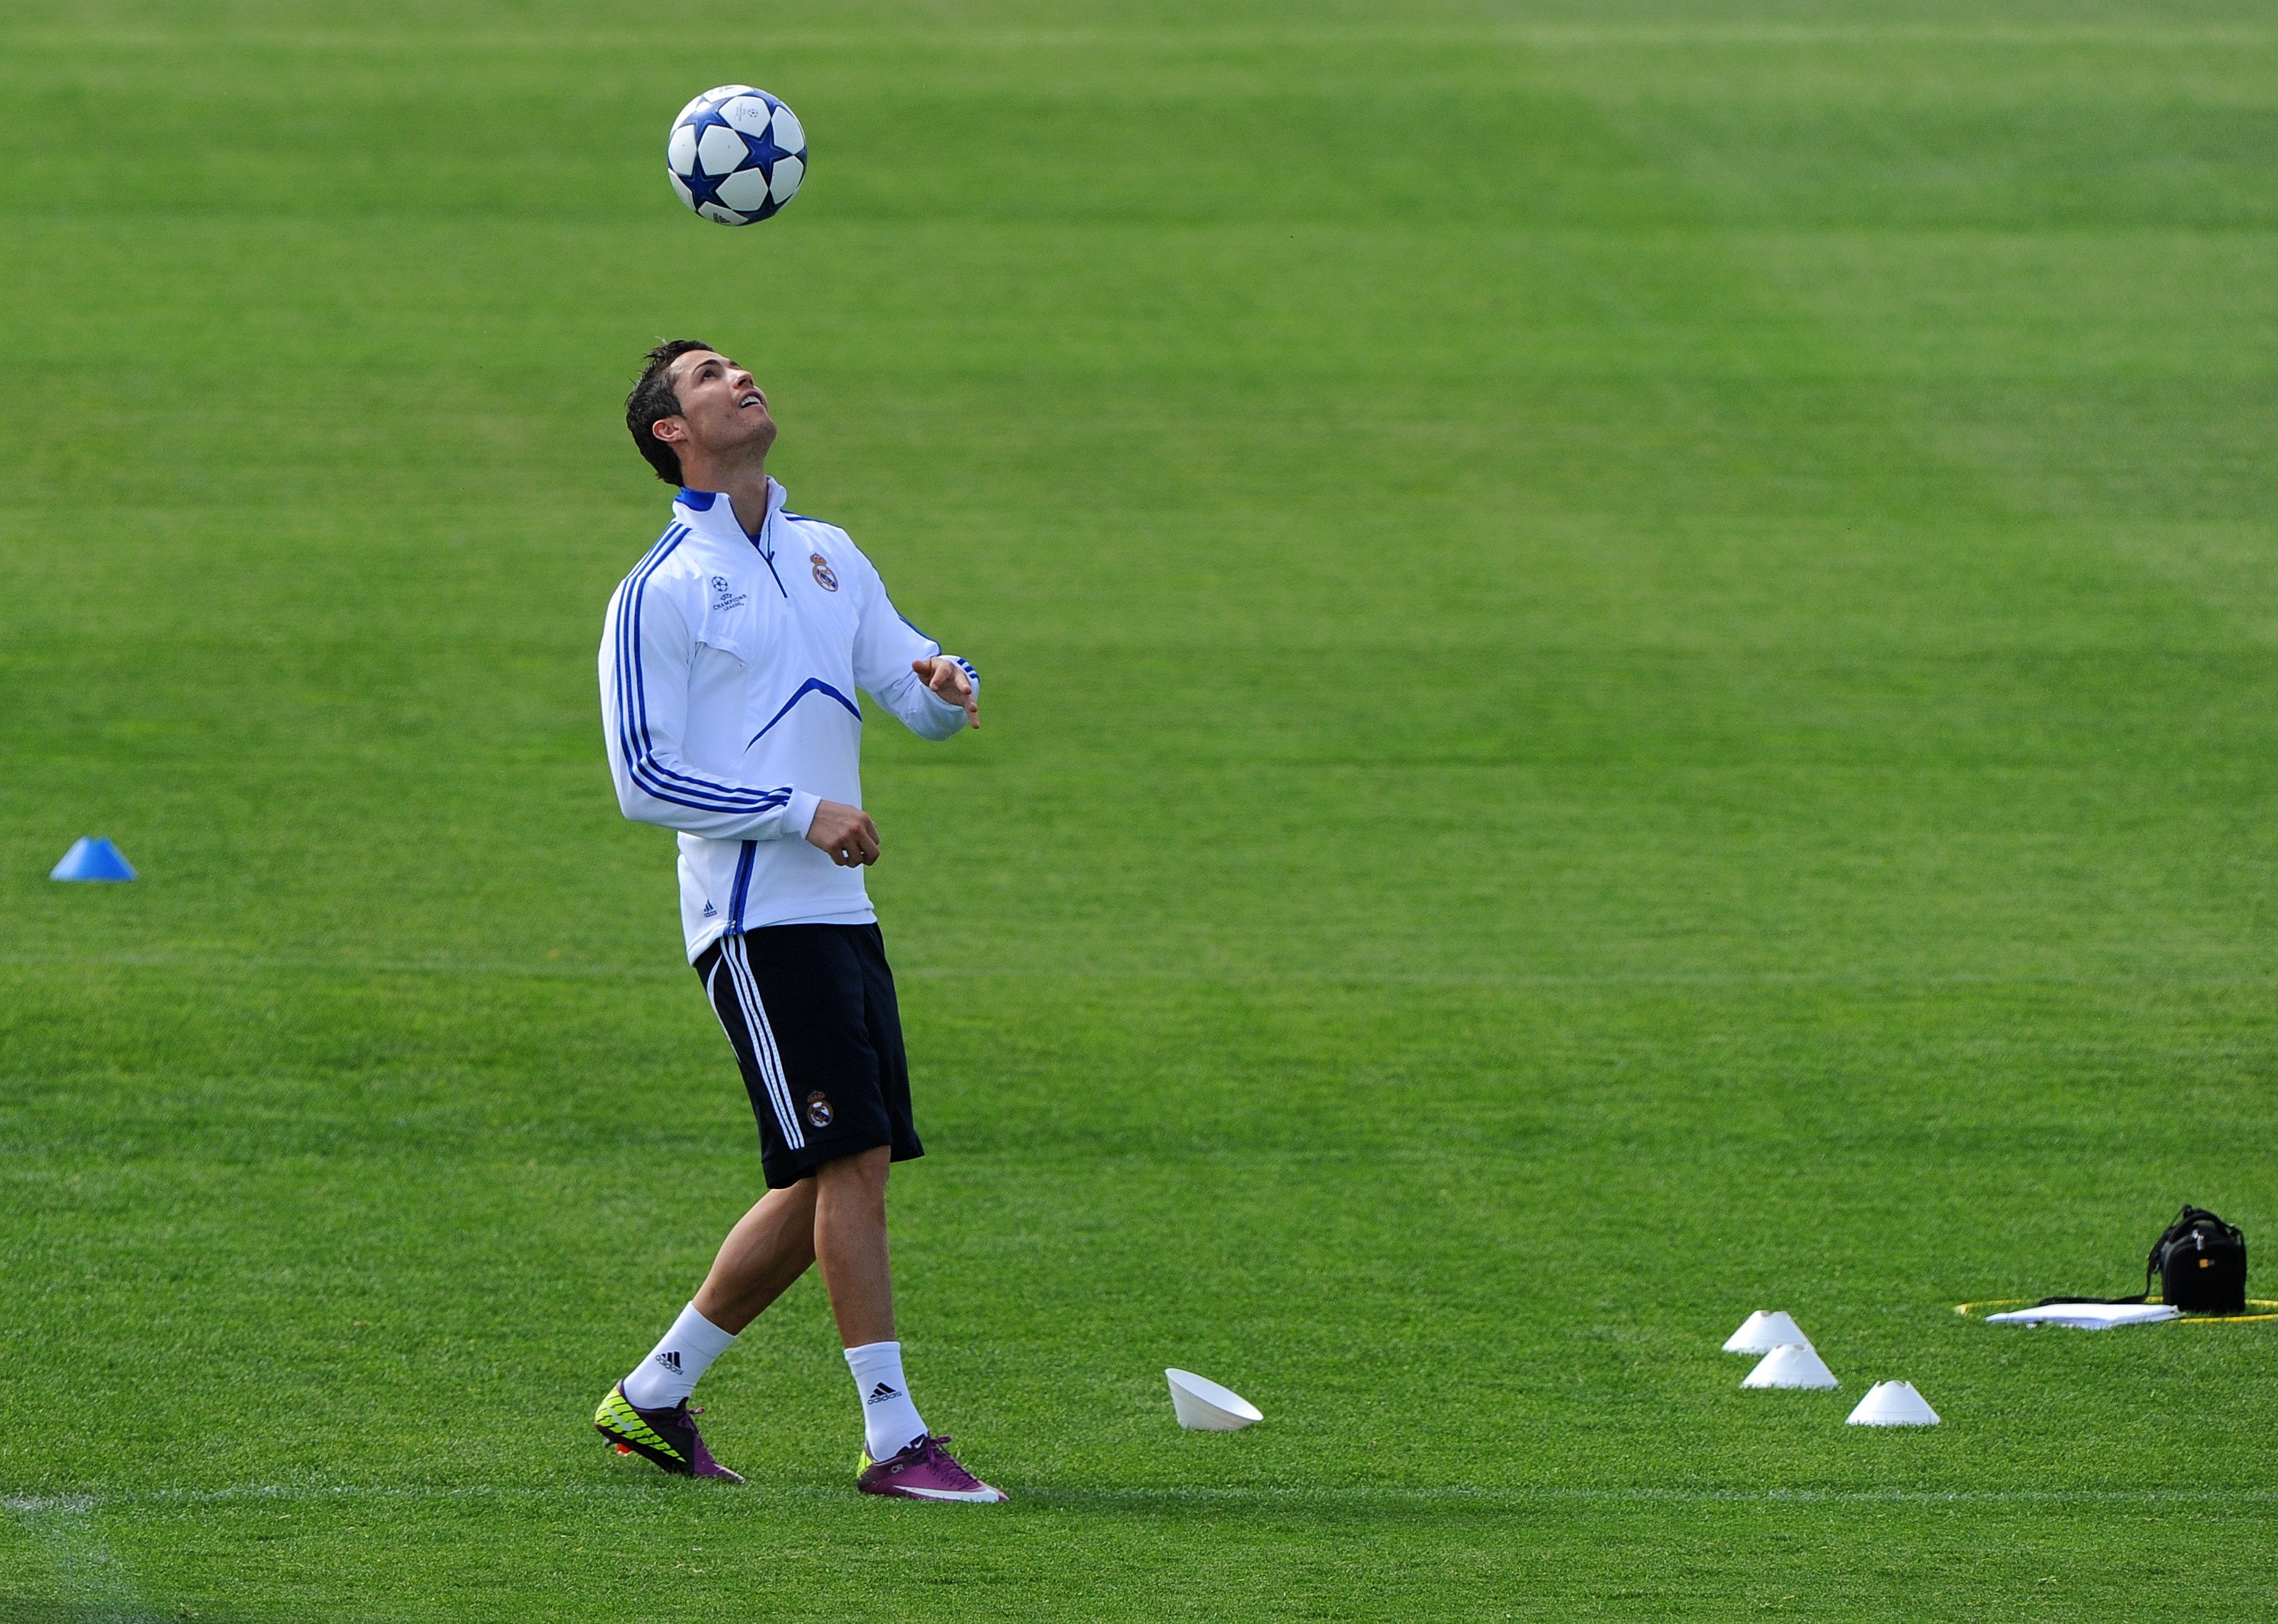 Голова мяч футбол. Криштиану Роналду футболисты. Криштиану Роналду на поле. Cristiano Ronaldo чеканит мяч. Криштиану Роналду на поле с мячом.